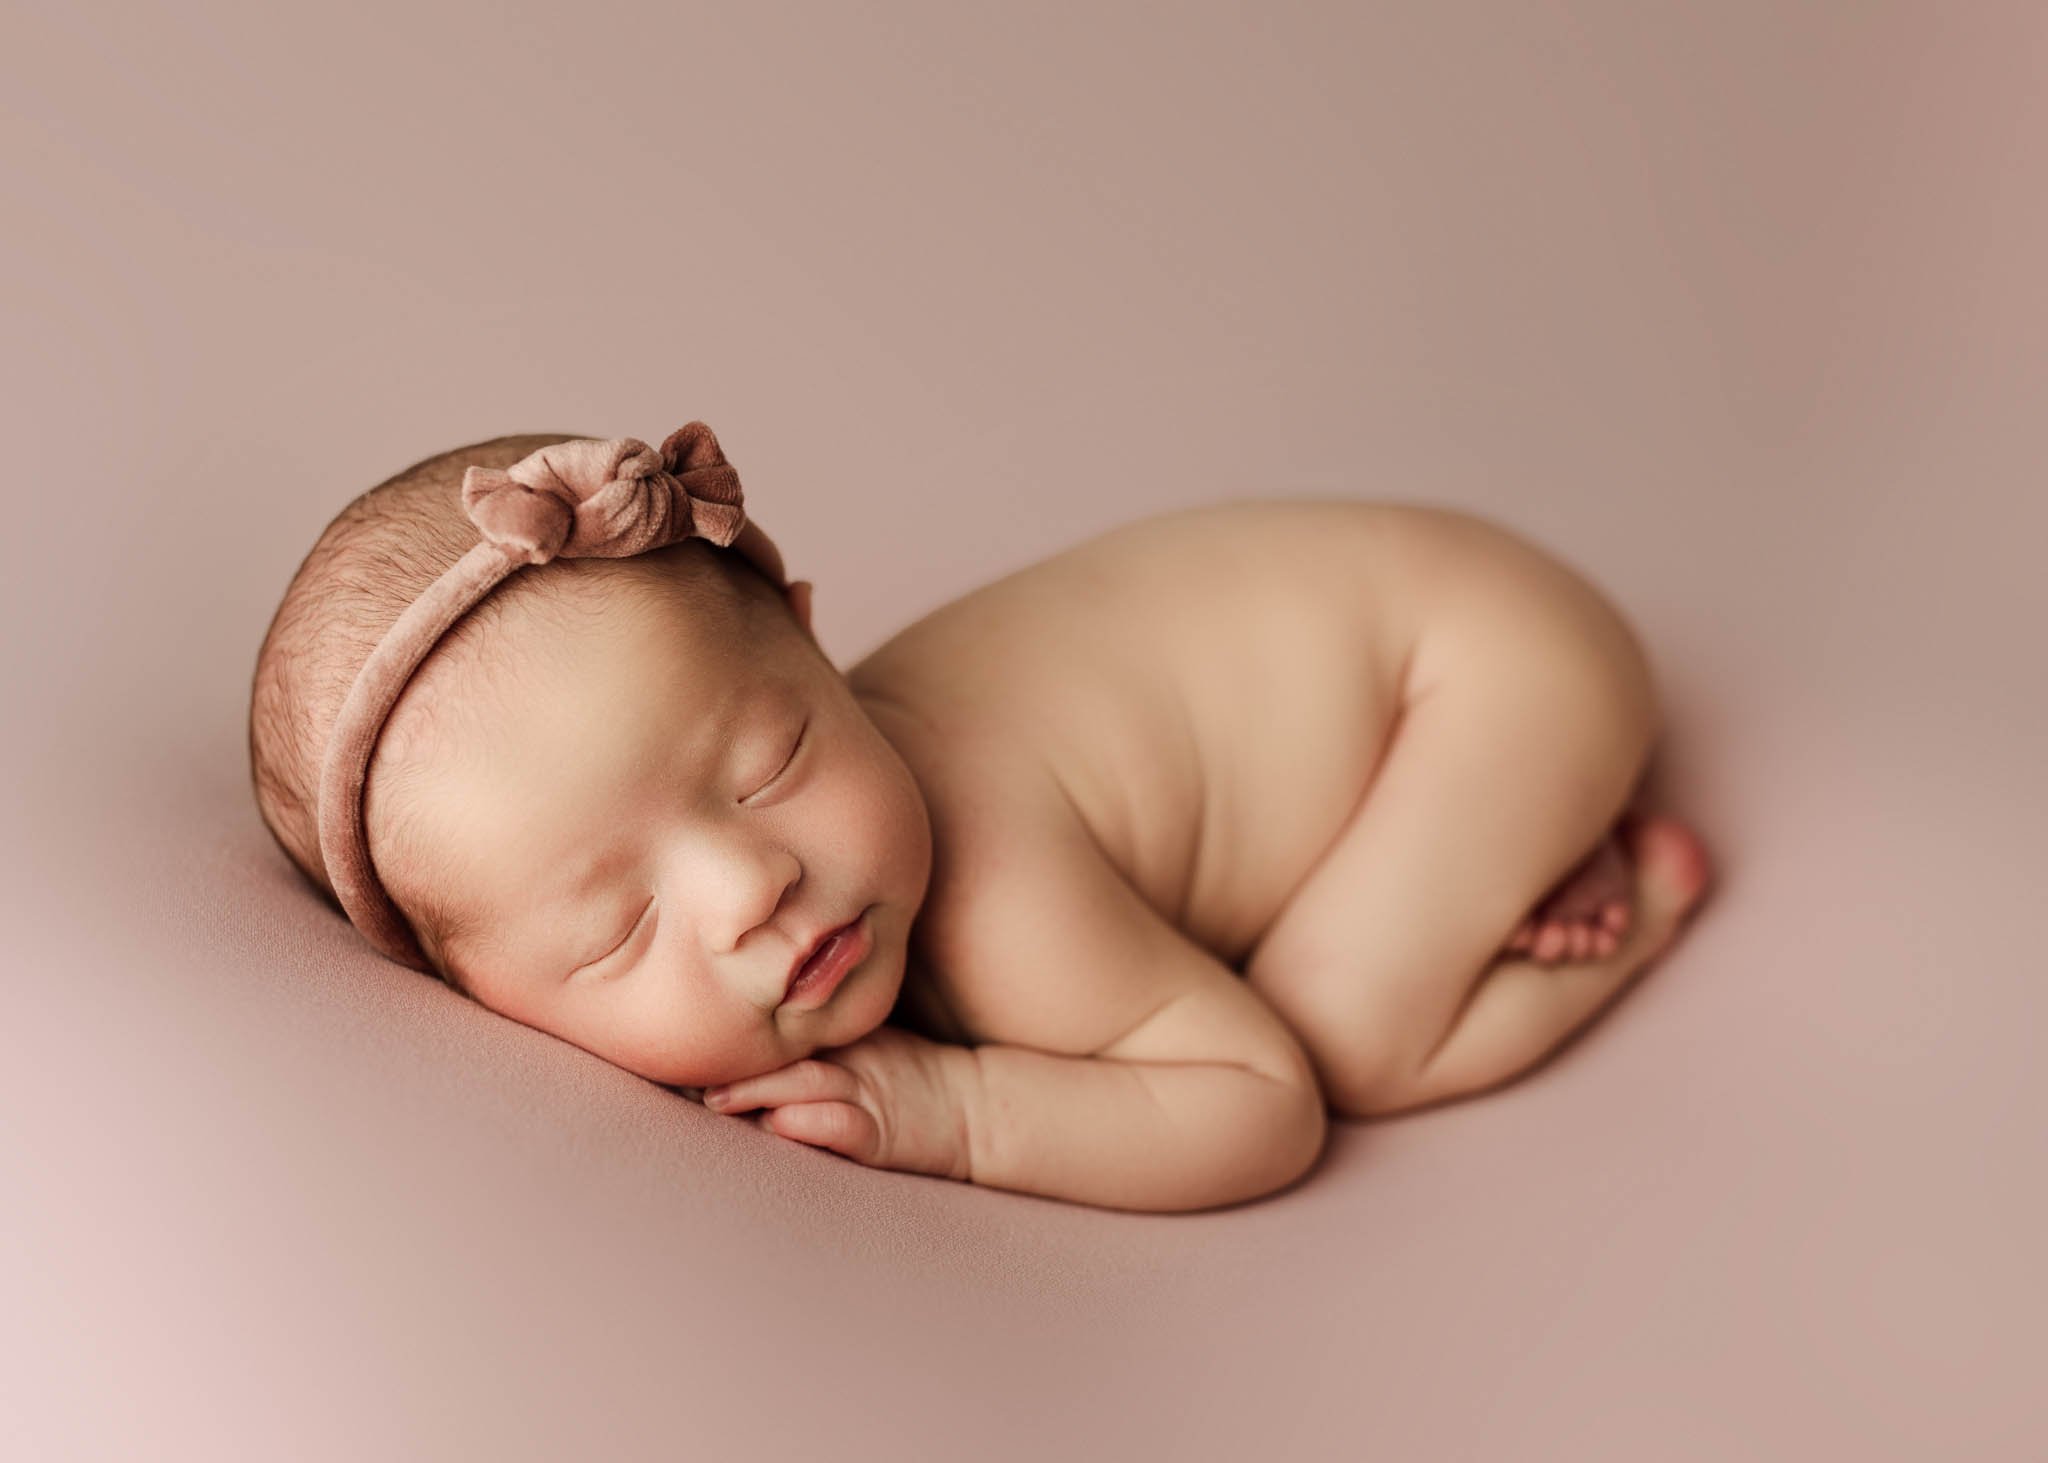 Baby girl on pink blanket, headband